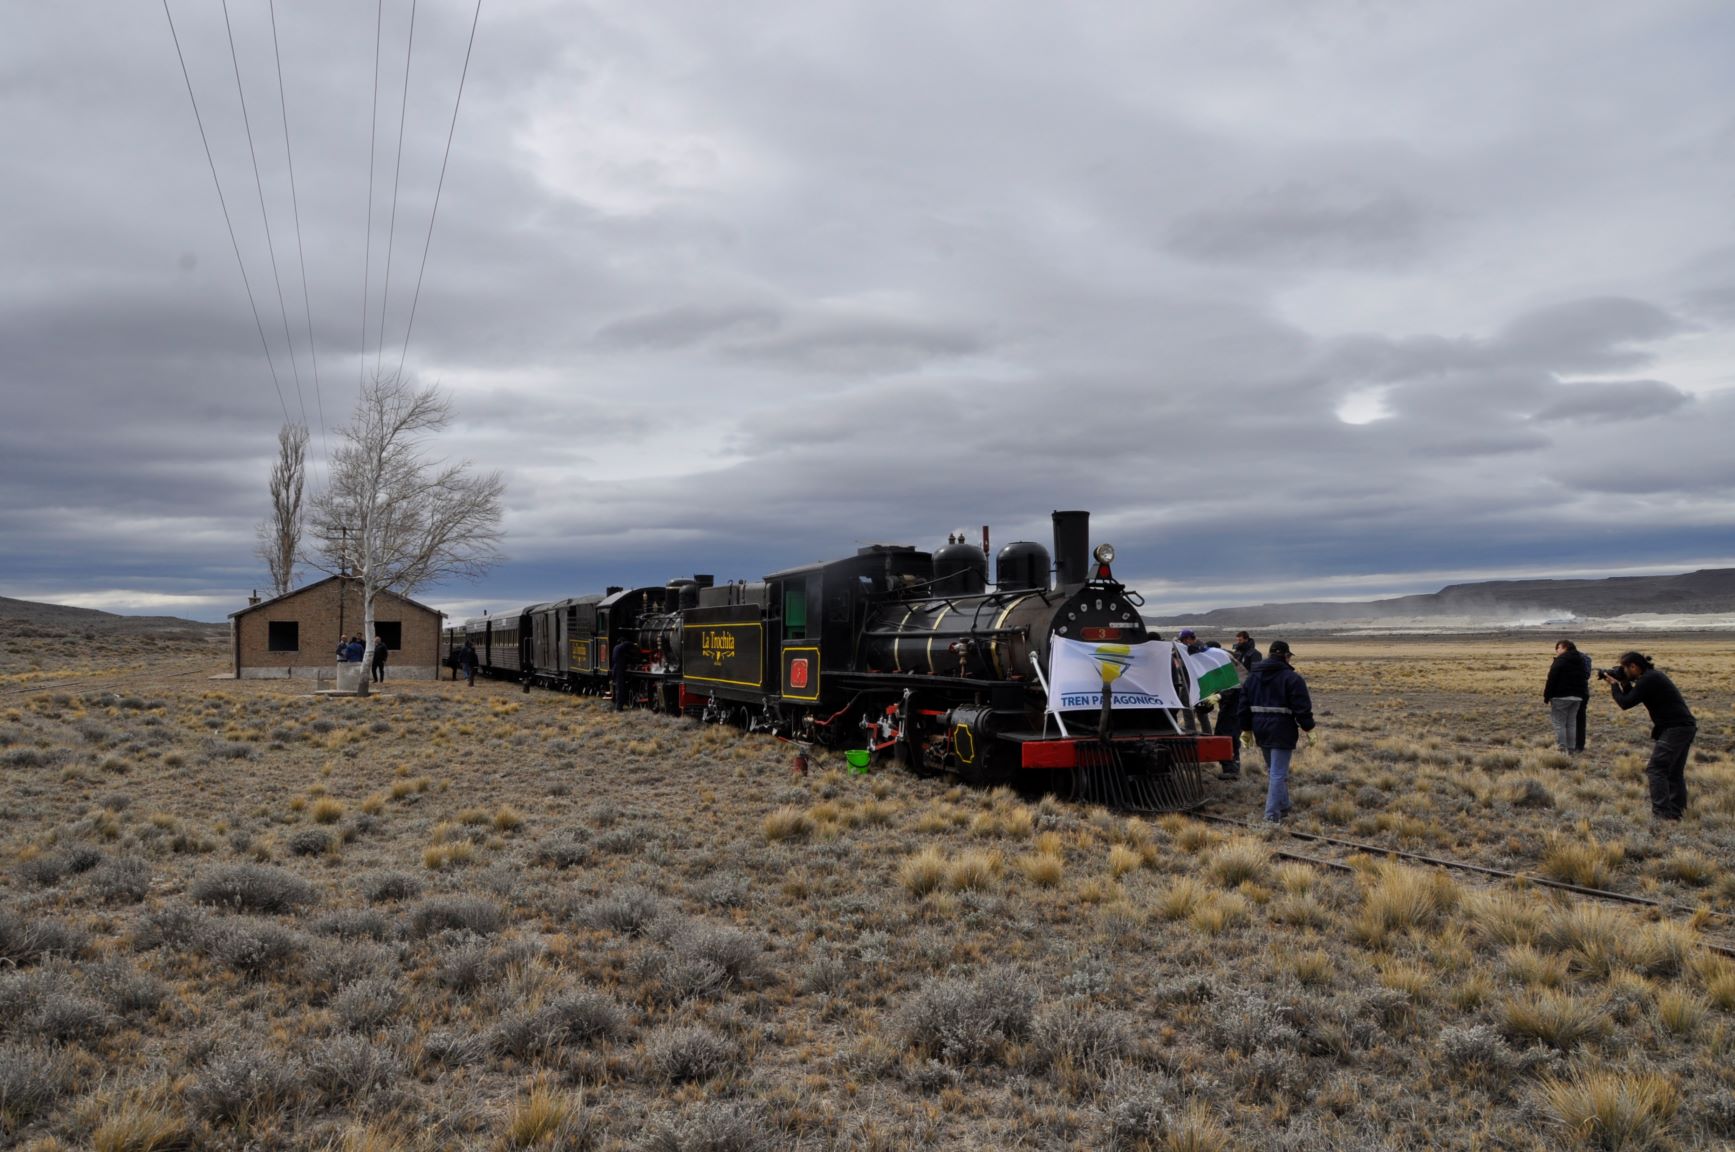 La Trochita, el mítico tren de la Patagonia, vuelve a rodar este verano. Archivo